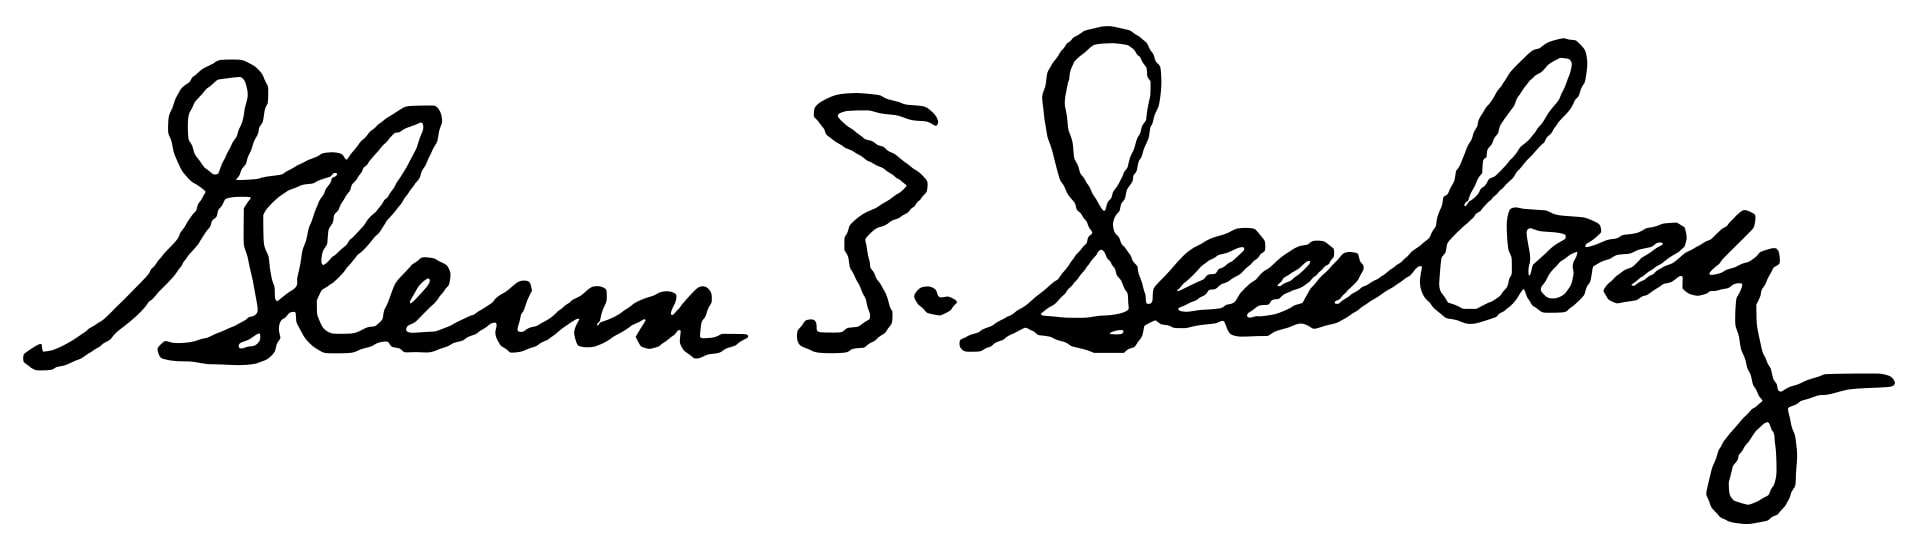 Glenn T. Seaborg Signature